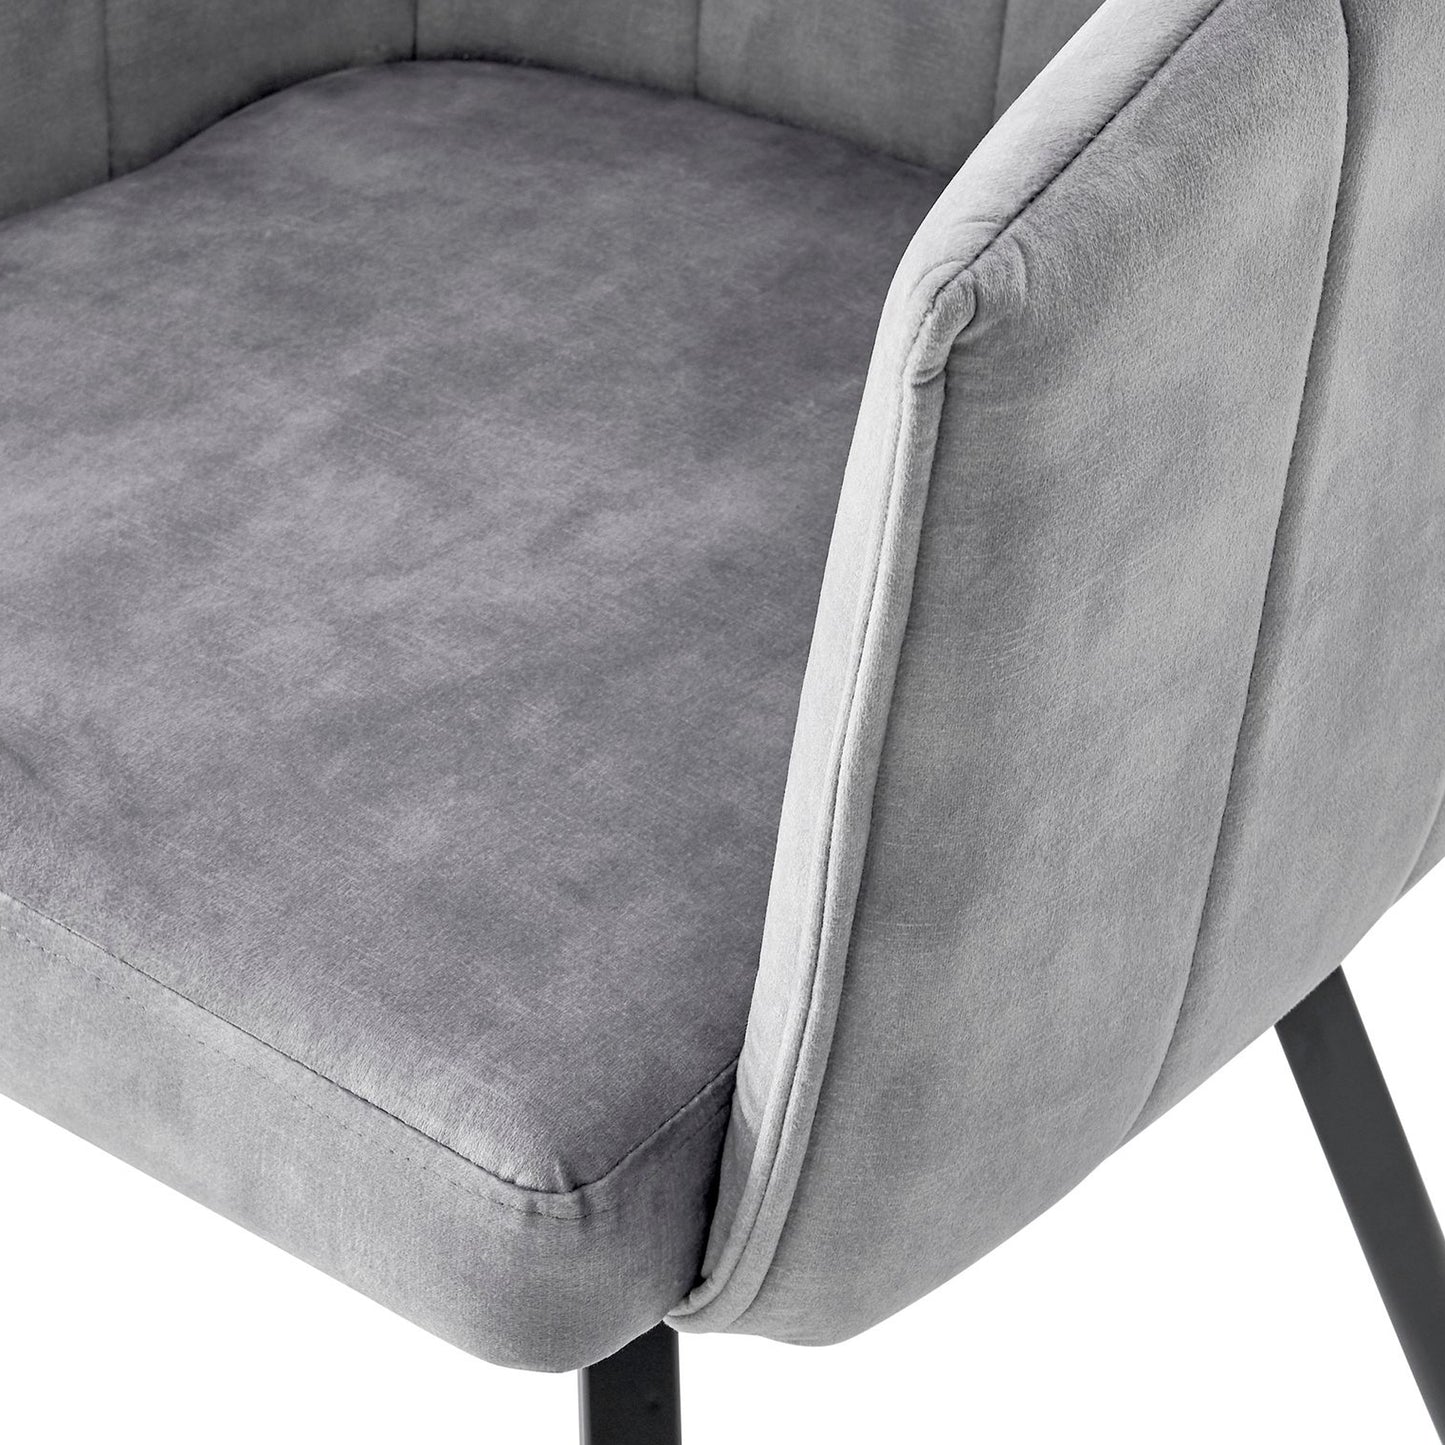 Grey Velvet Dining Chair With Swivel Black Legs